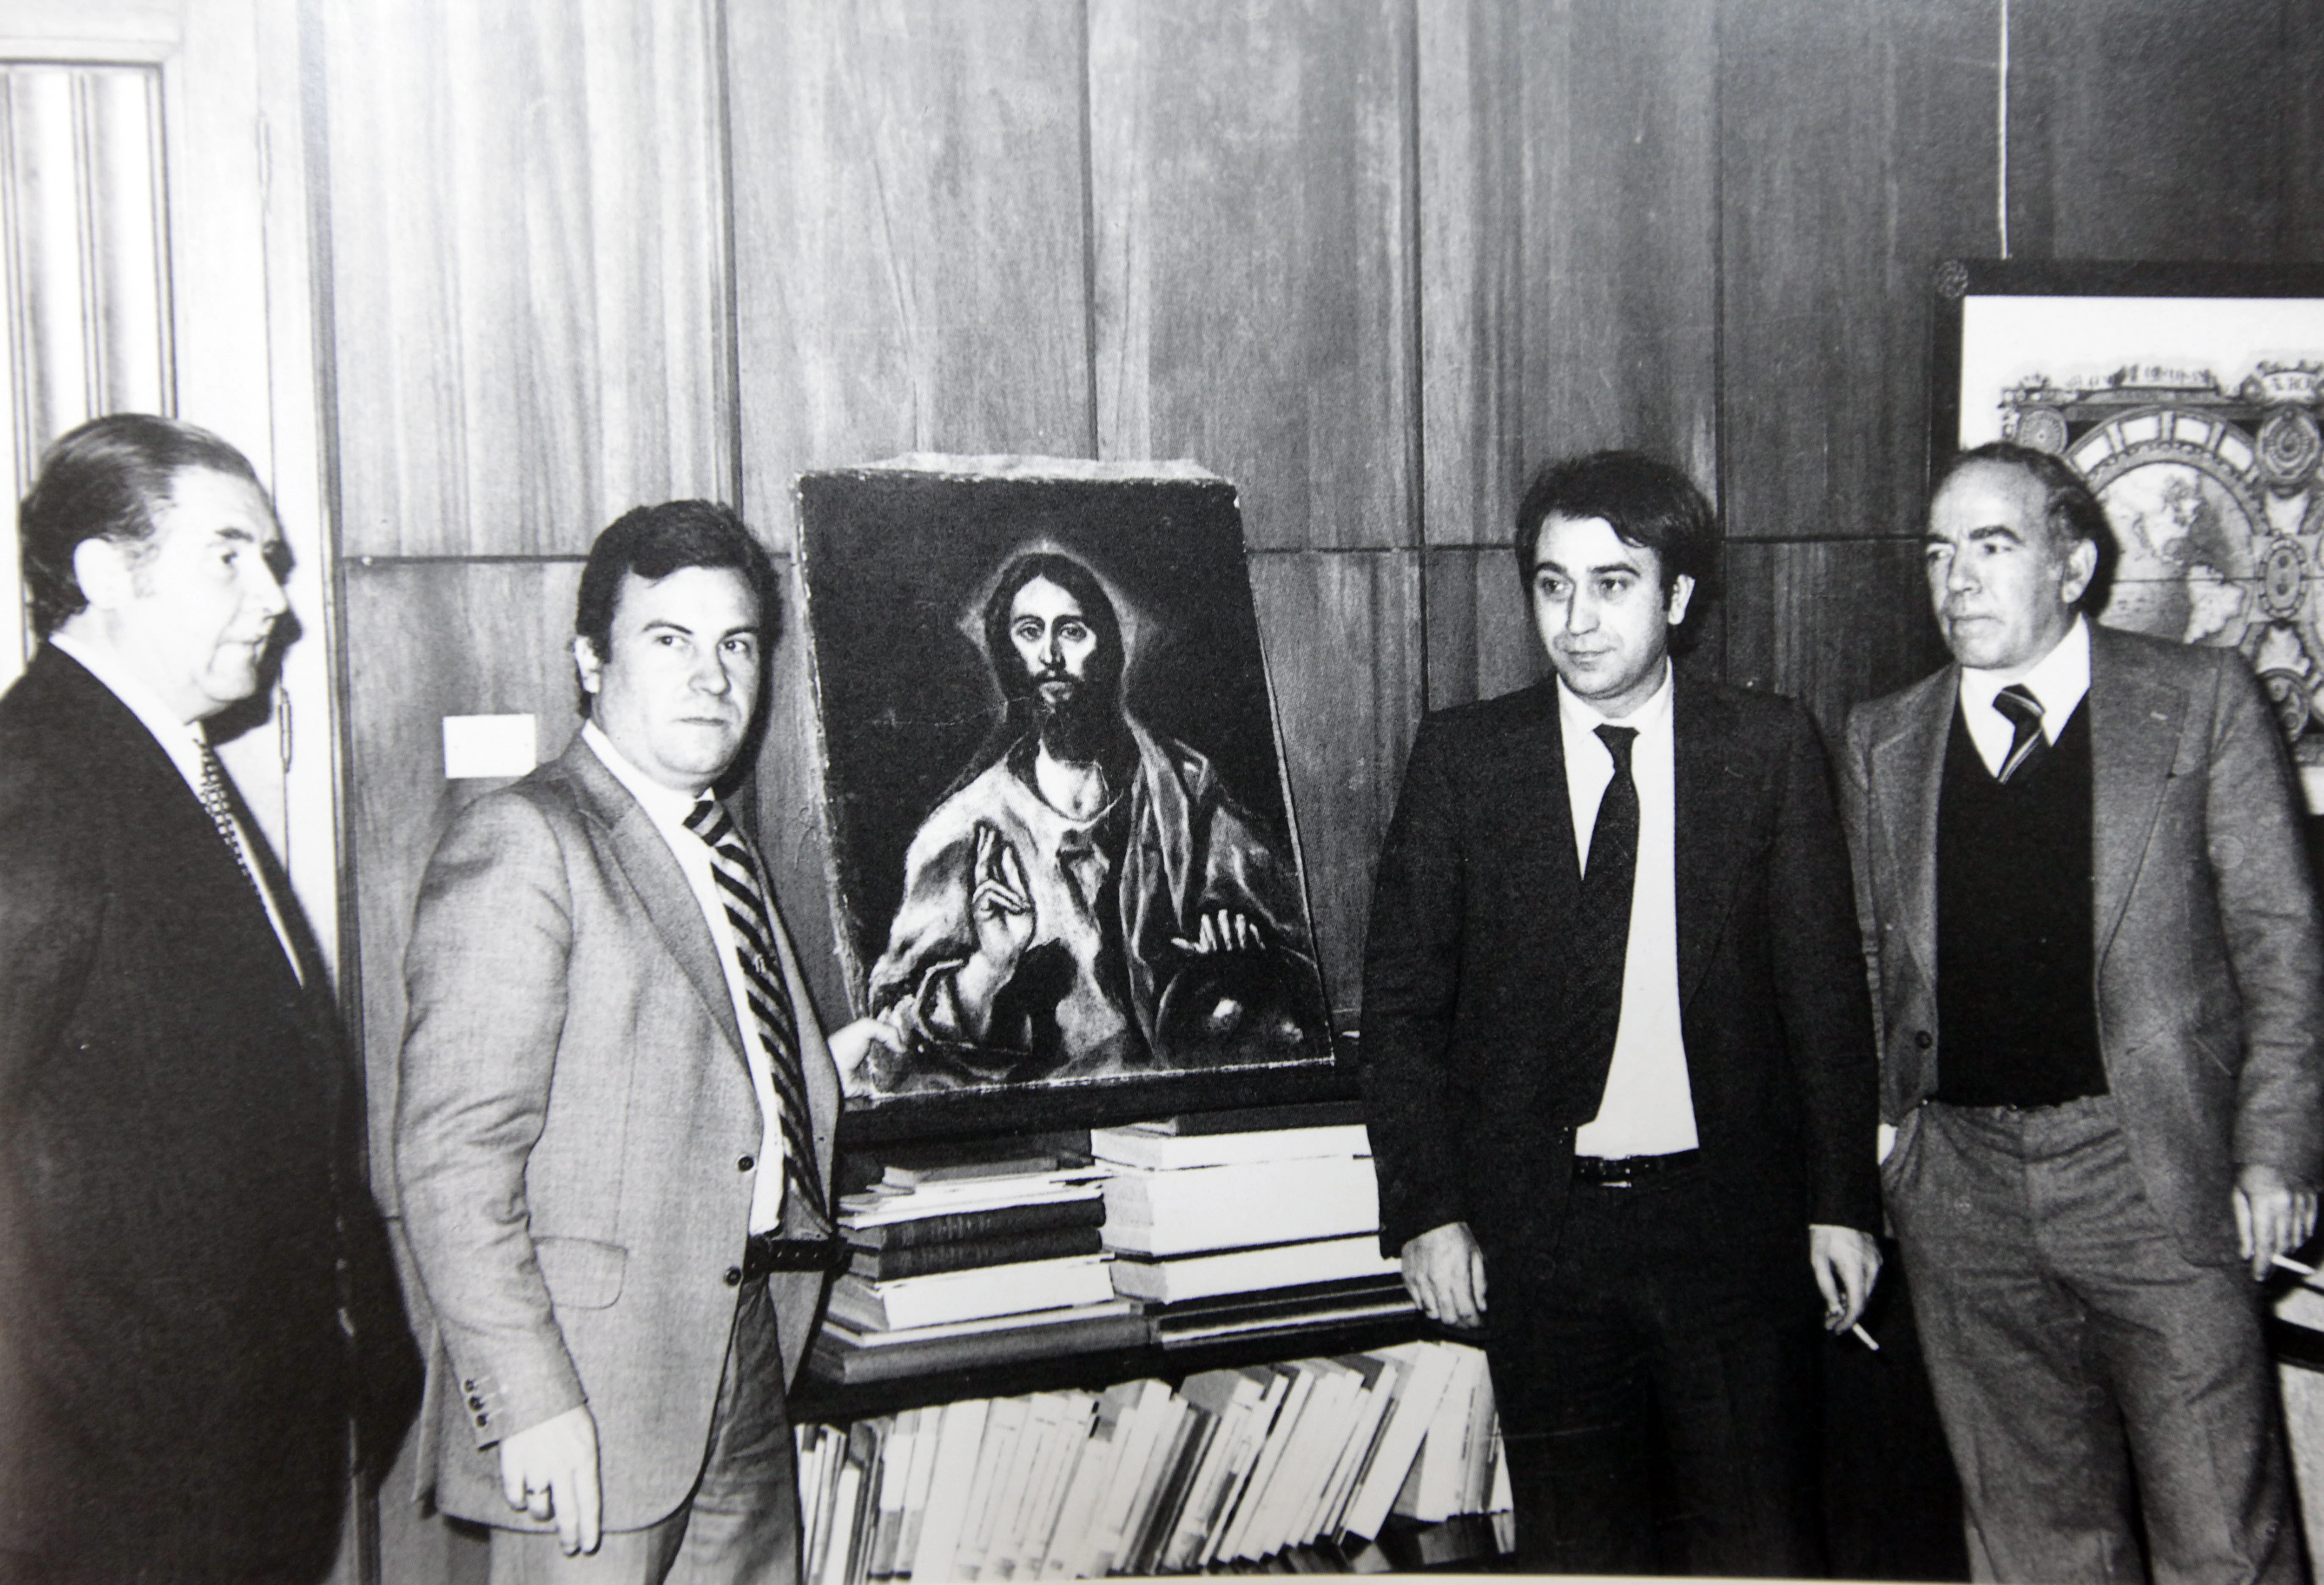 Imagen de El Greco cacereño recuperado en 1980. Junto al cuadro está el gobernador civil Tafalla y el delegado de Cultura Teófilo González Porras